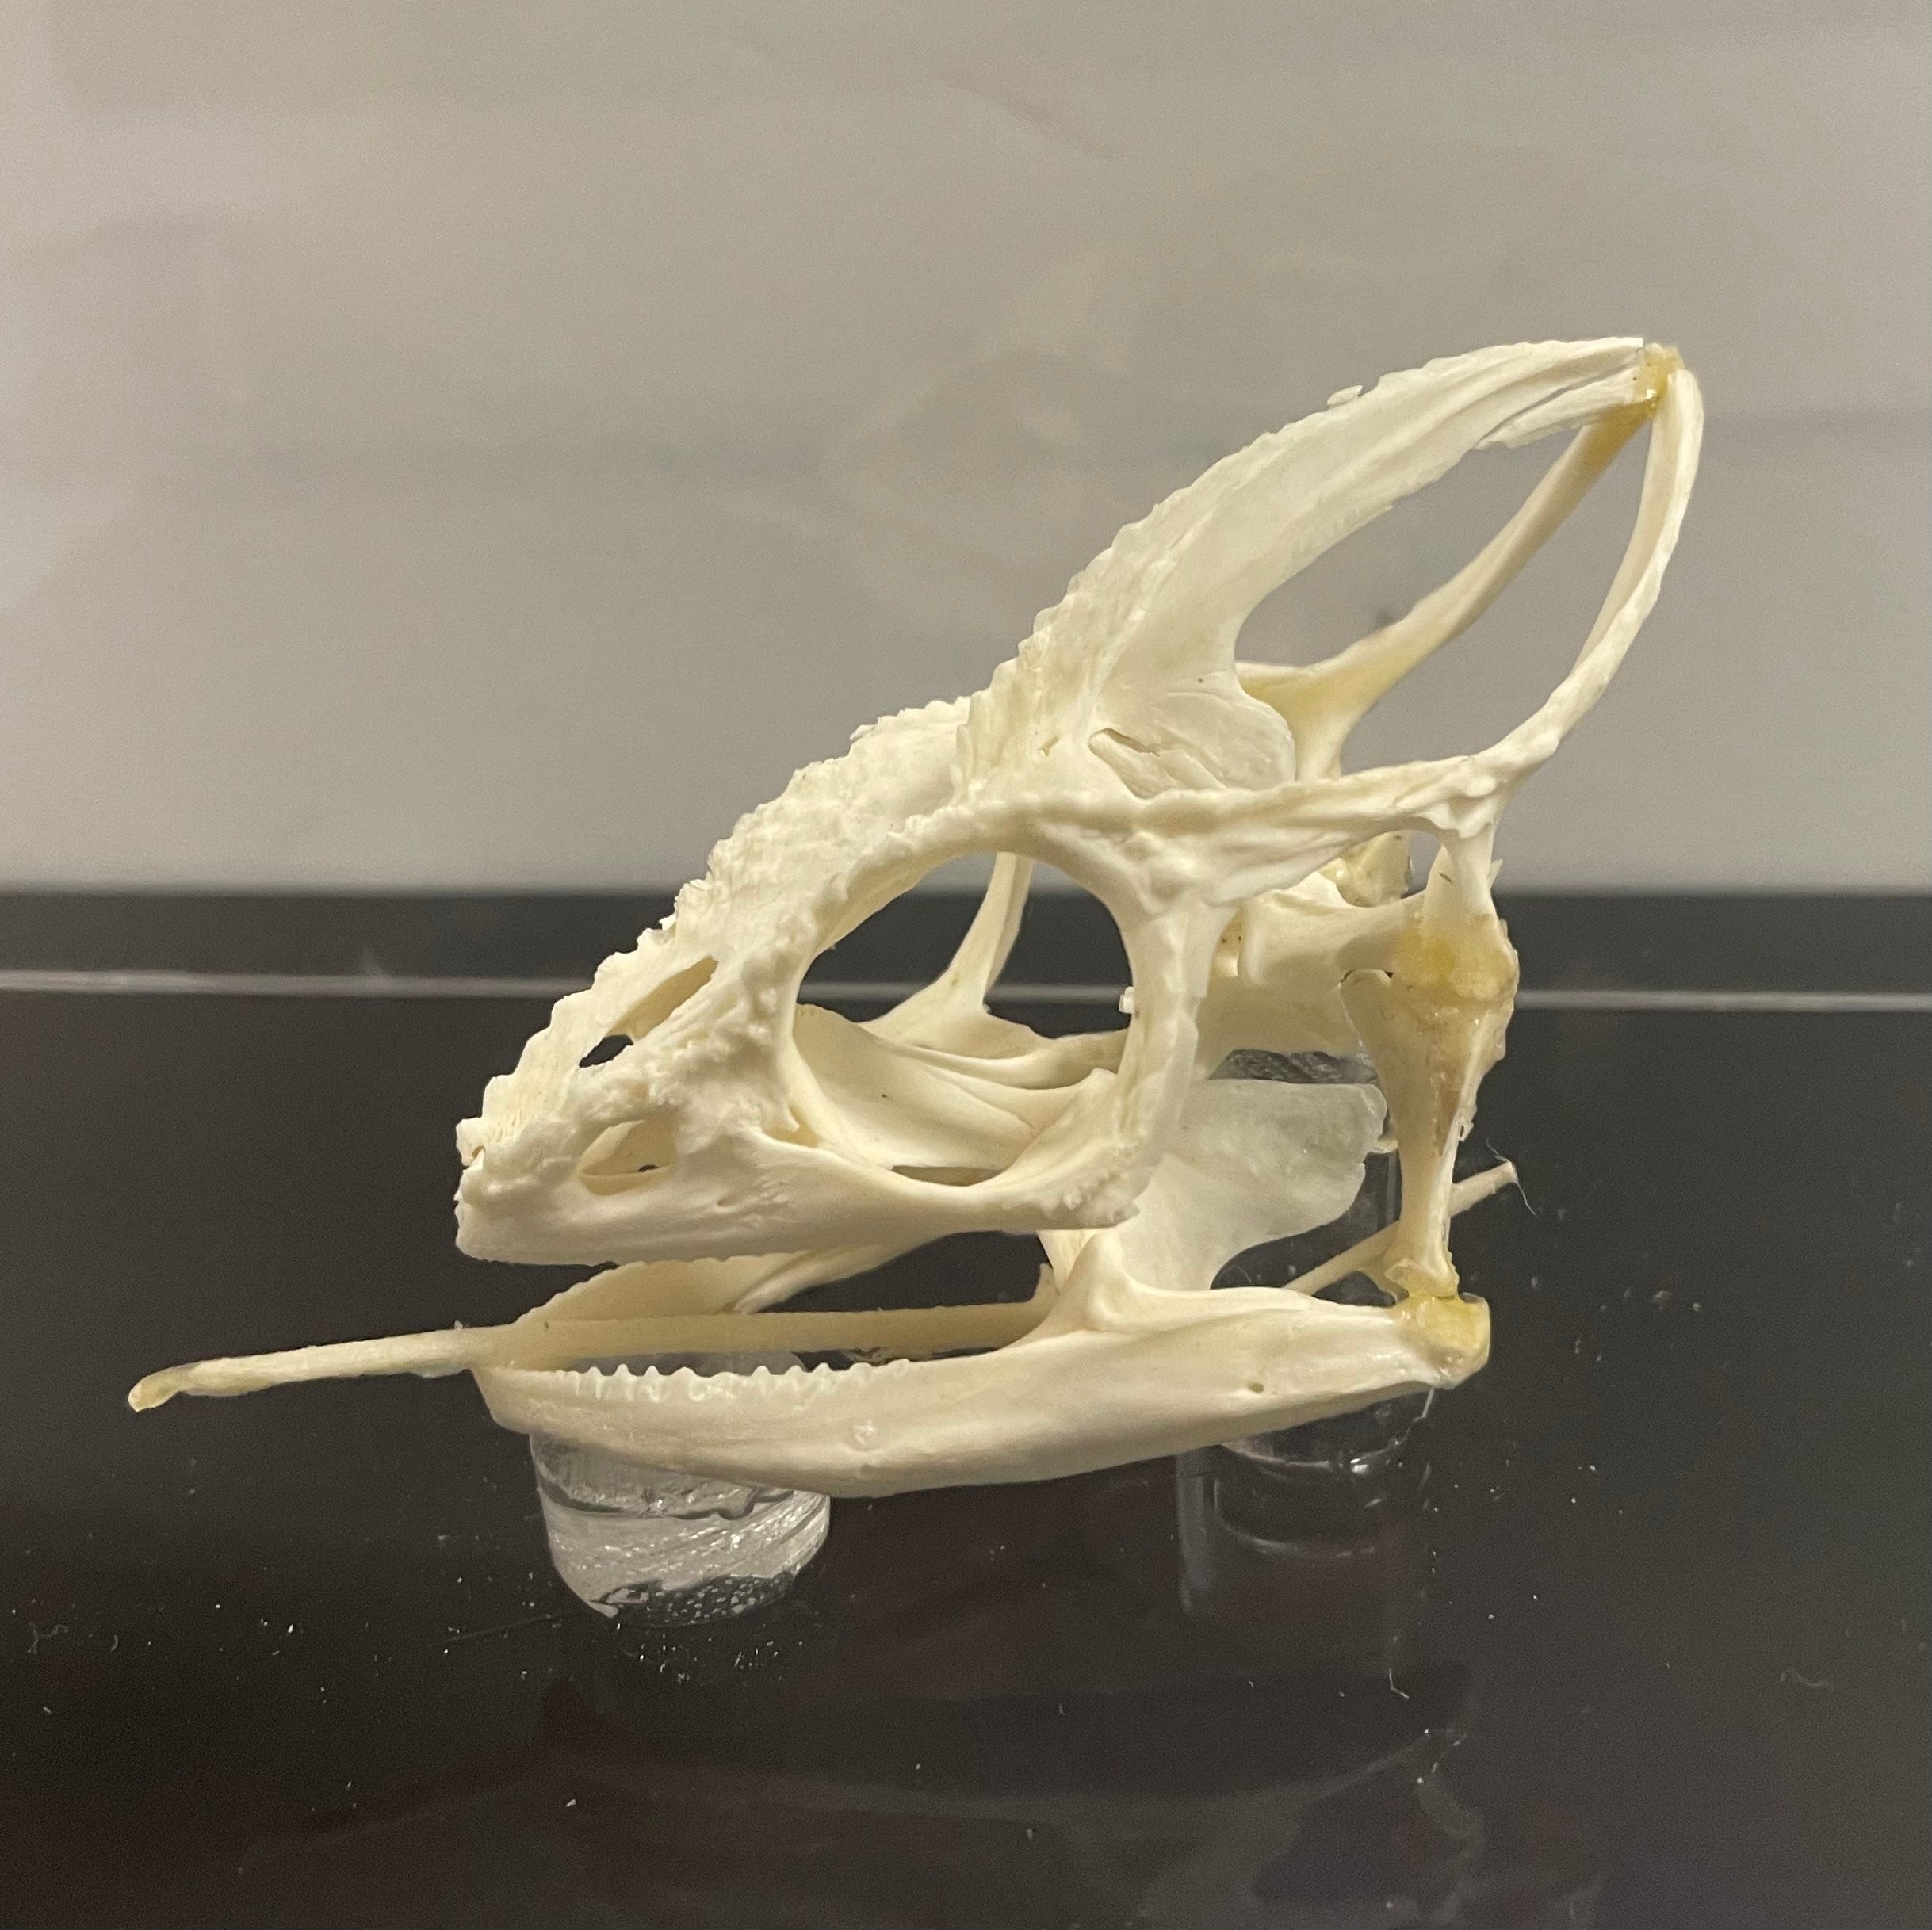 Oustalet's Chameleon Skull